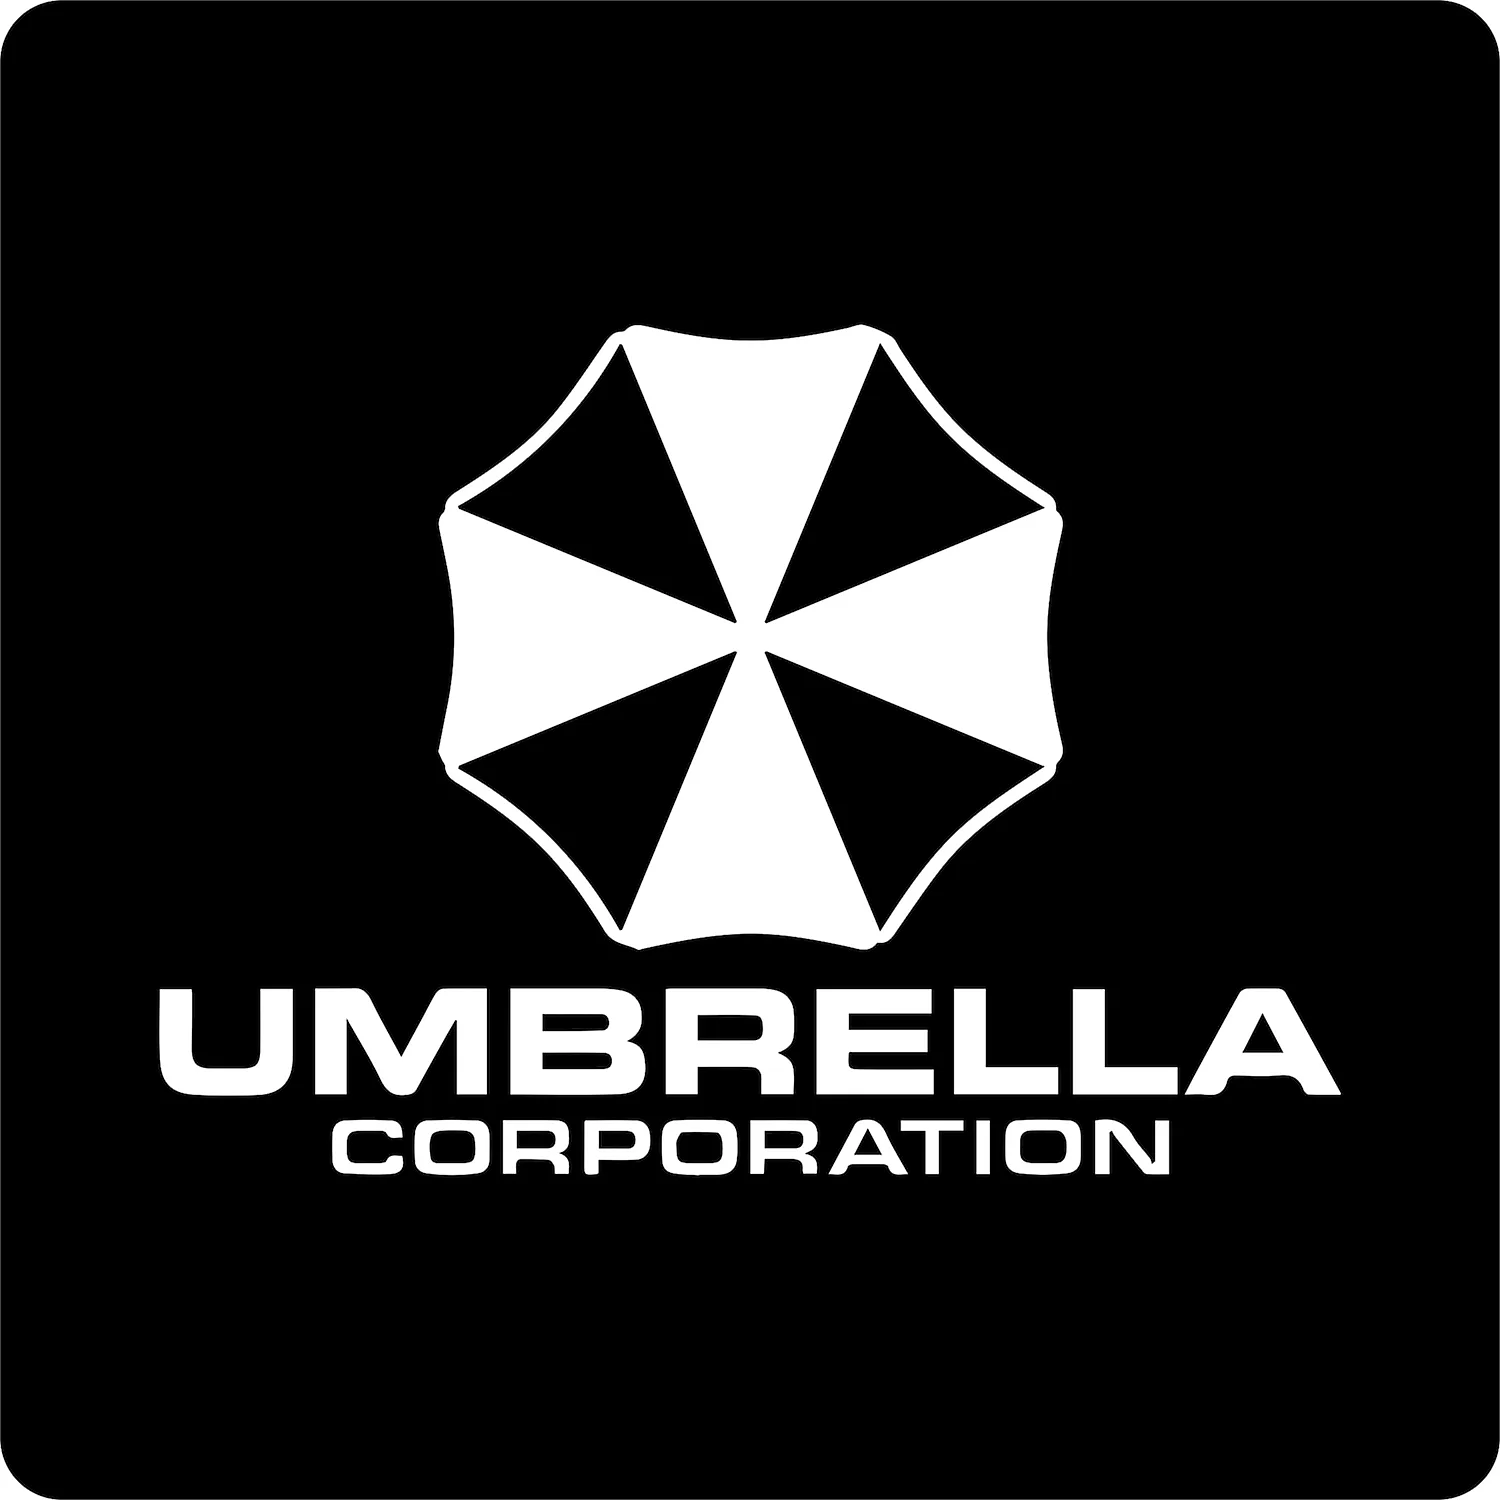 Umbrella Corporation наклейка на авто